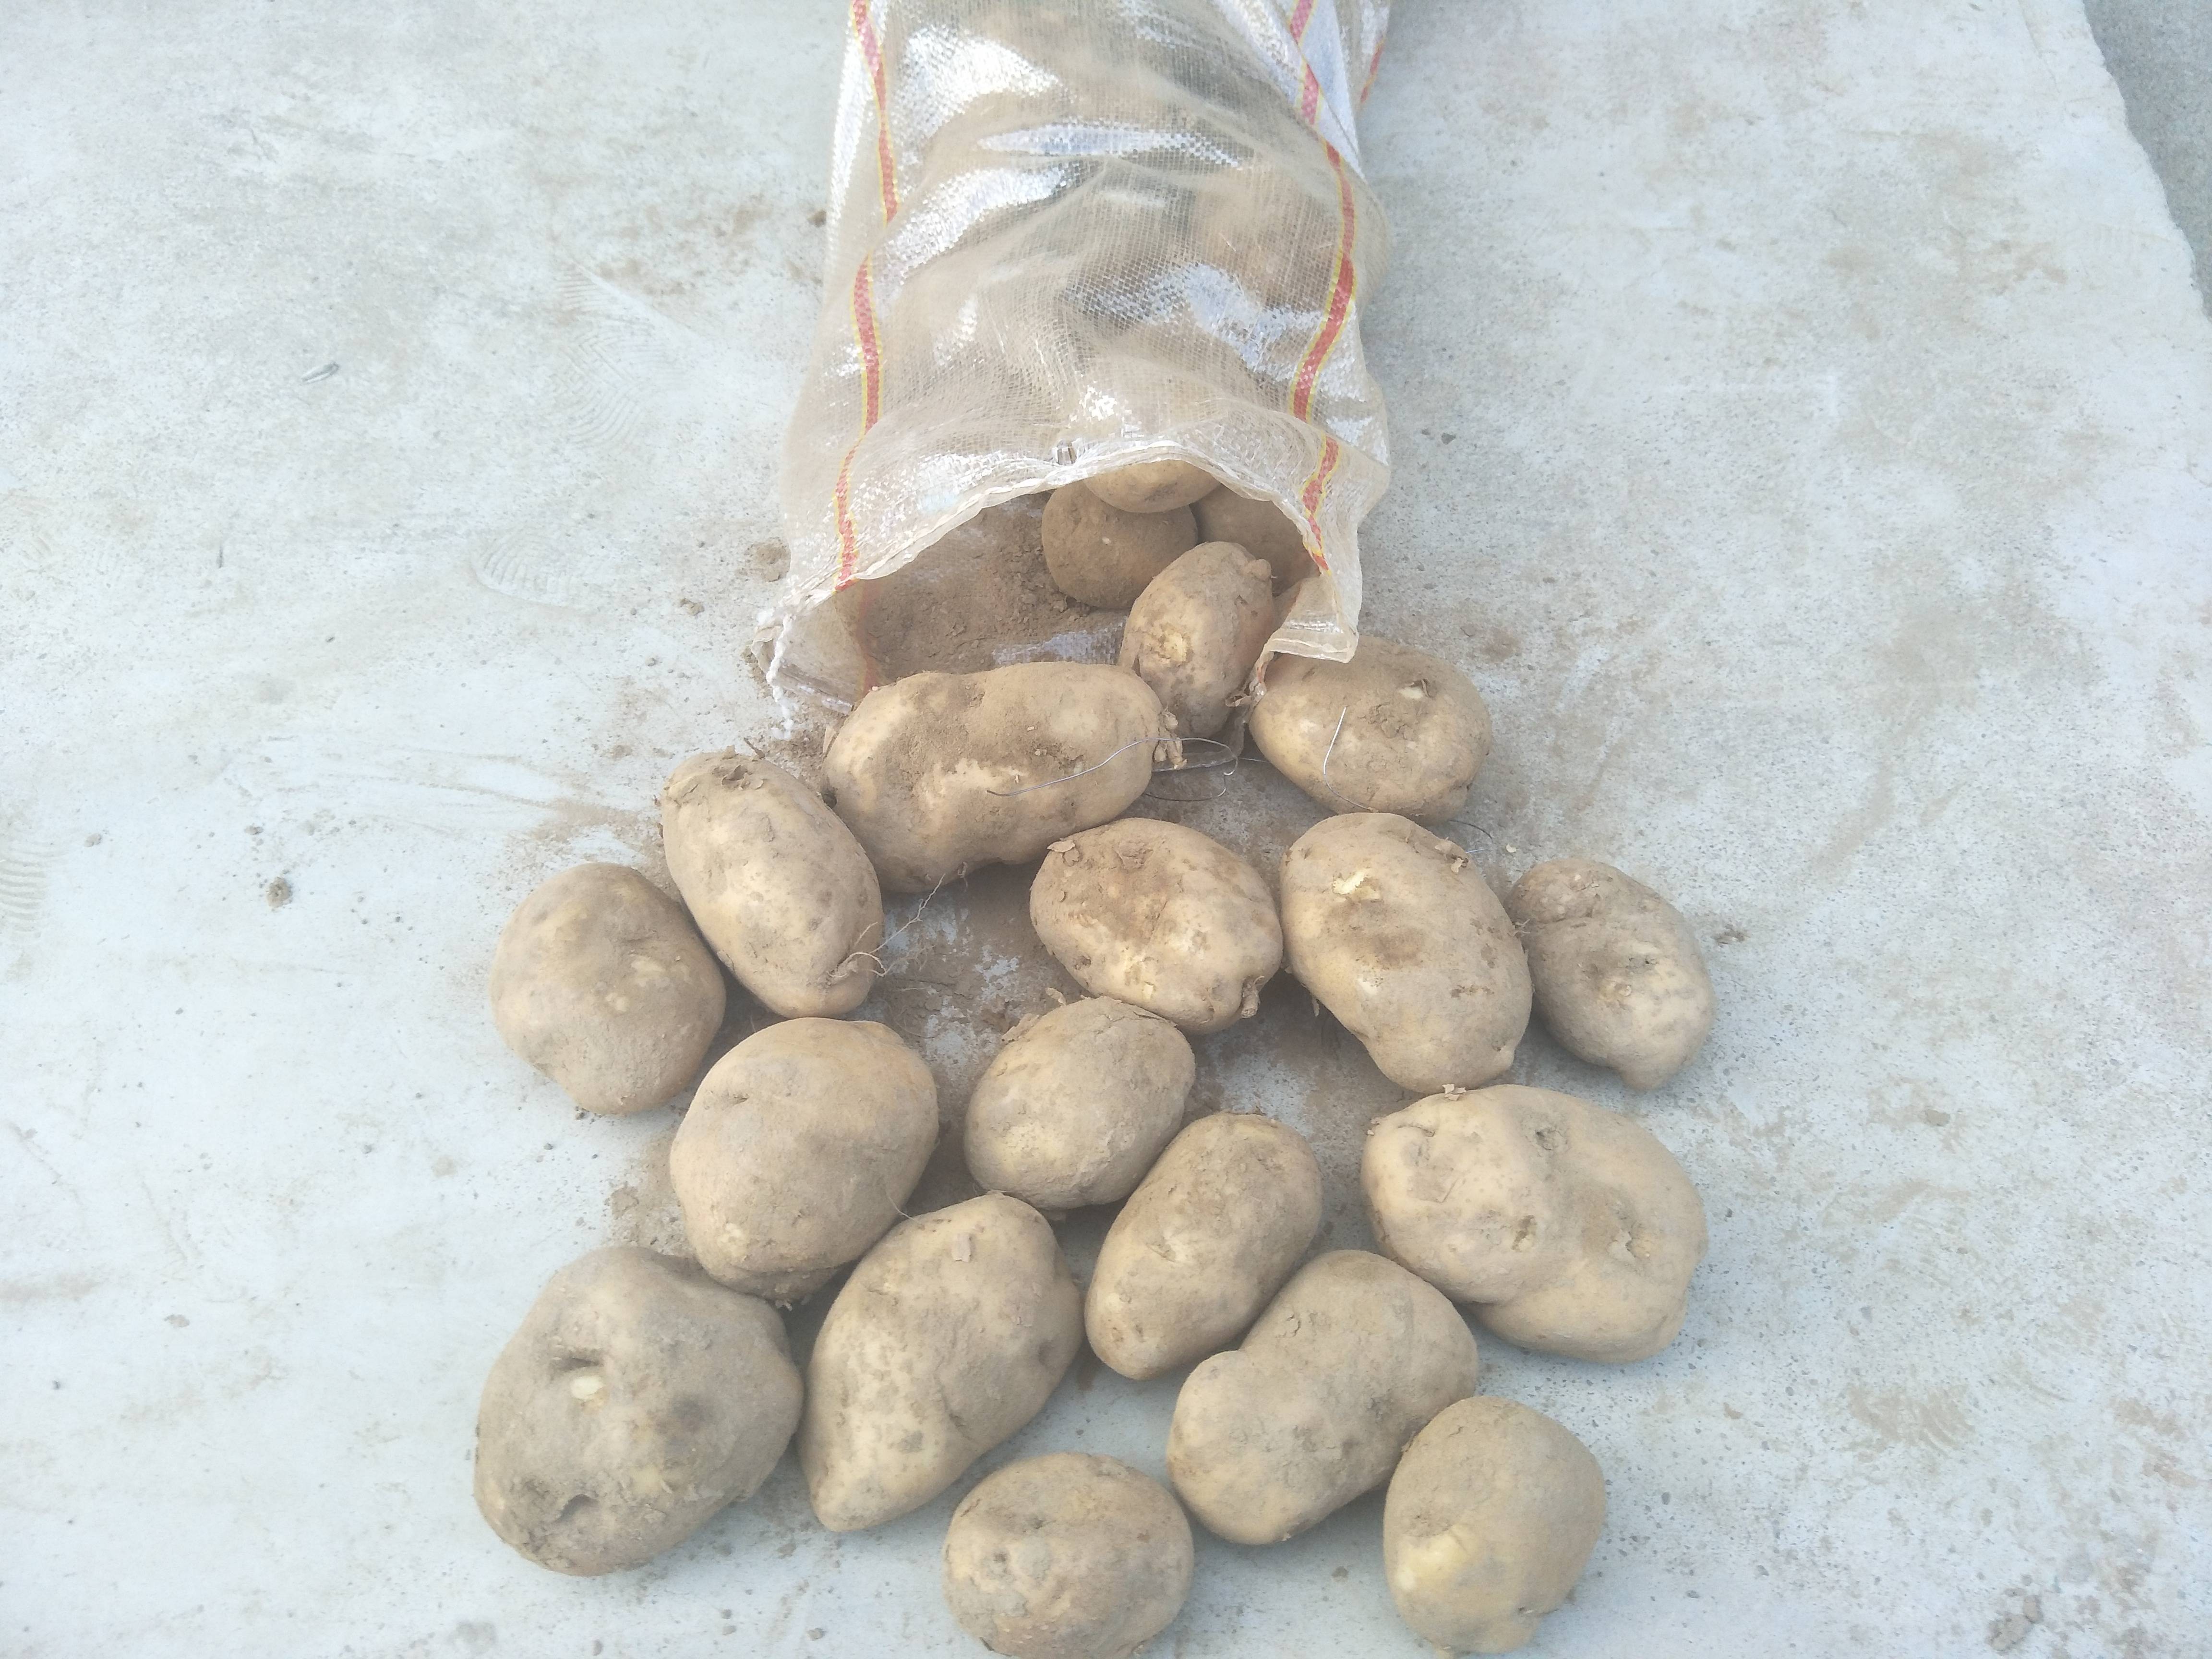 沙土地土豆晋薯16上市了，上车0.58元，需要的老板速度联系，货在山西岢岚县。